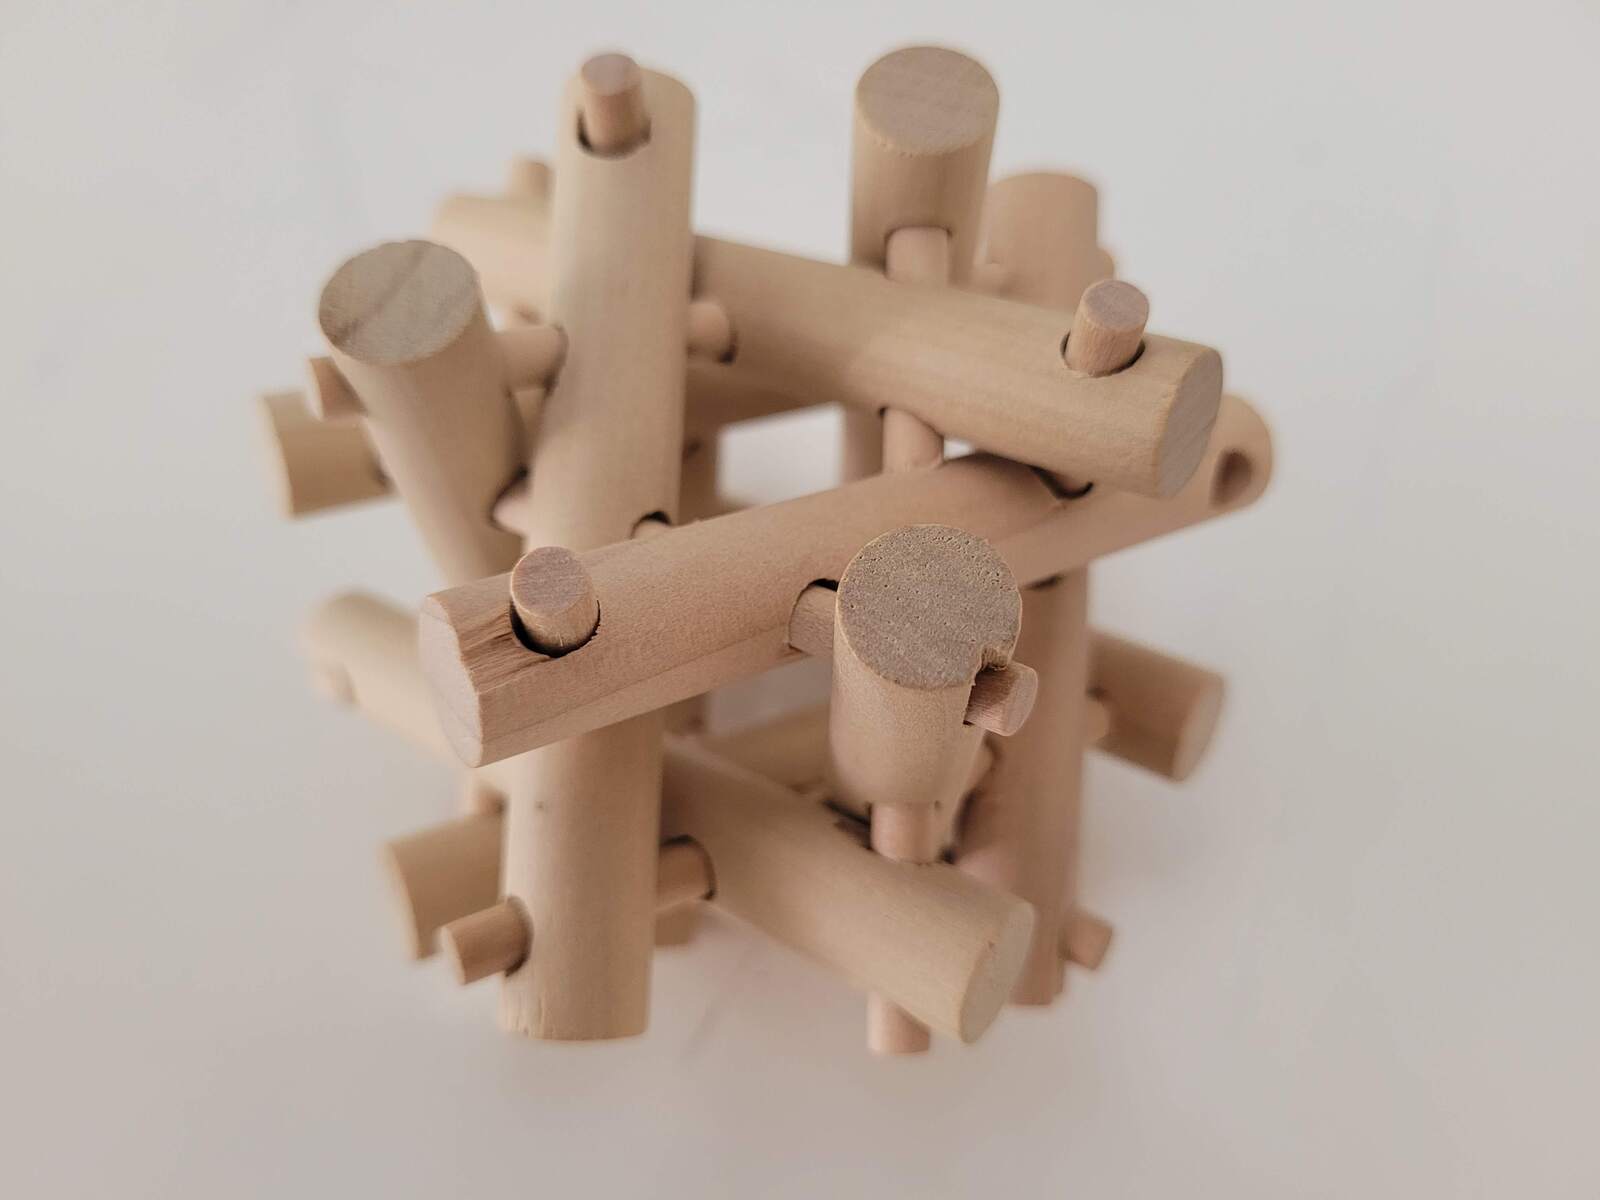 Echidna Wooden Brainteaser Puzzle